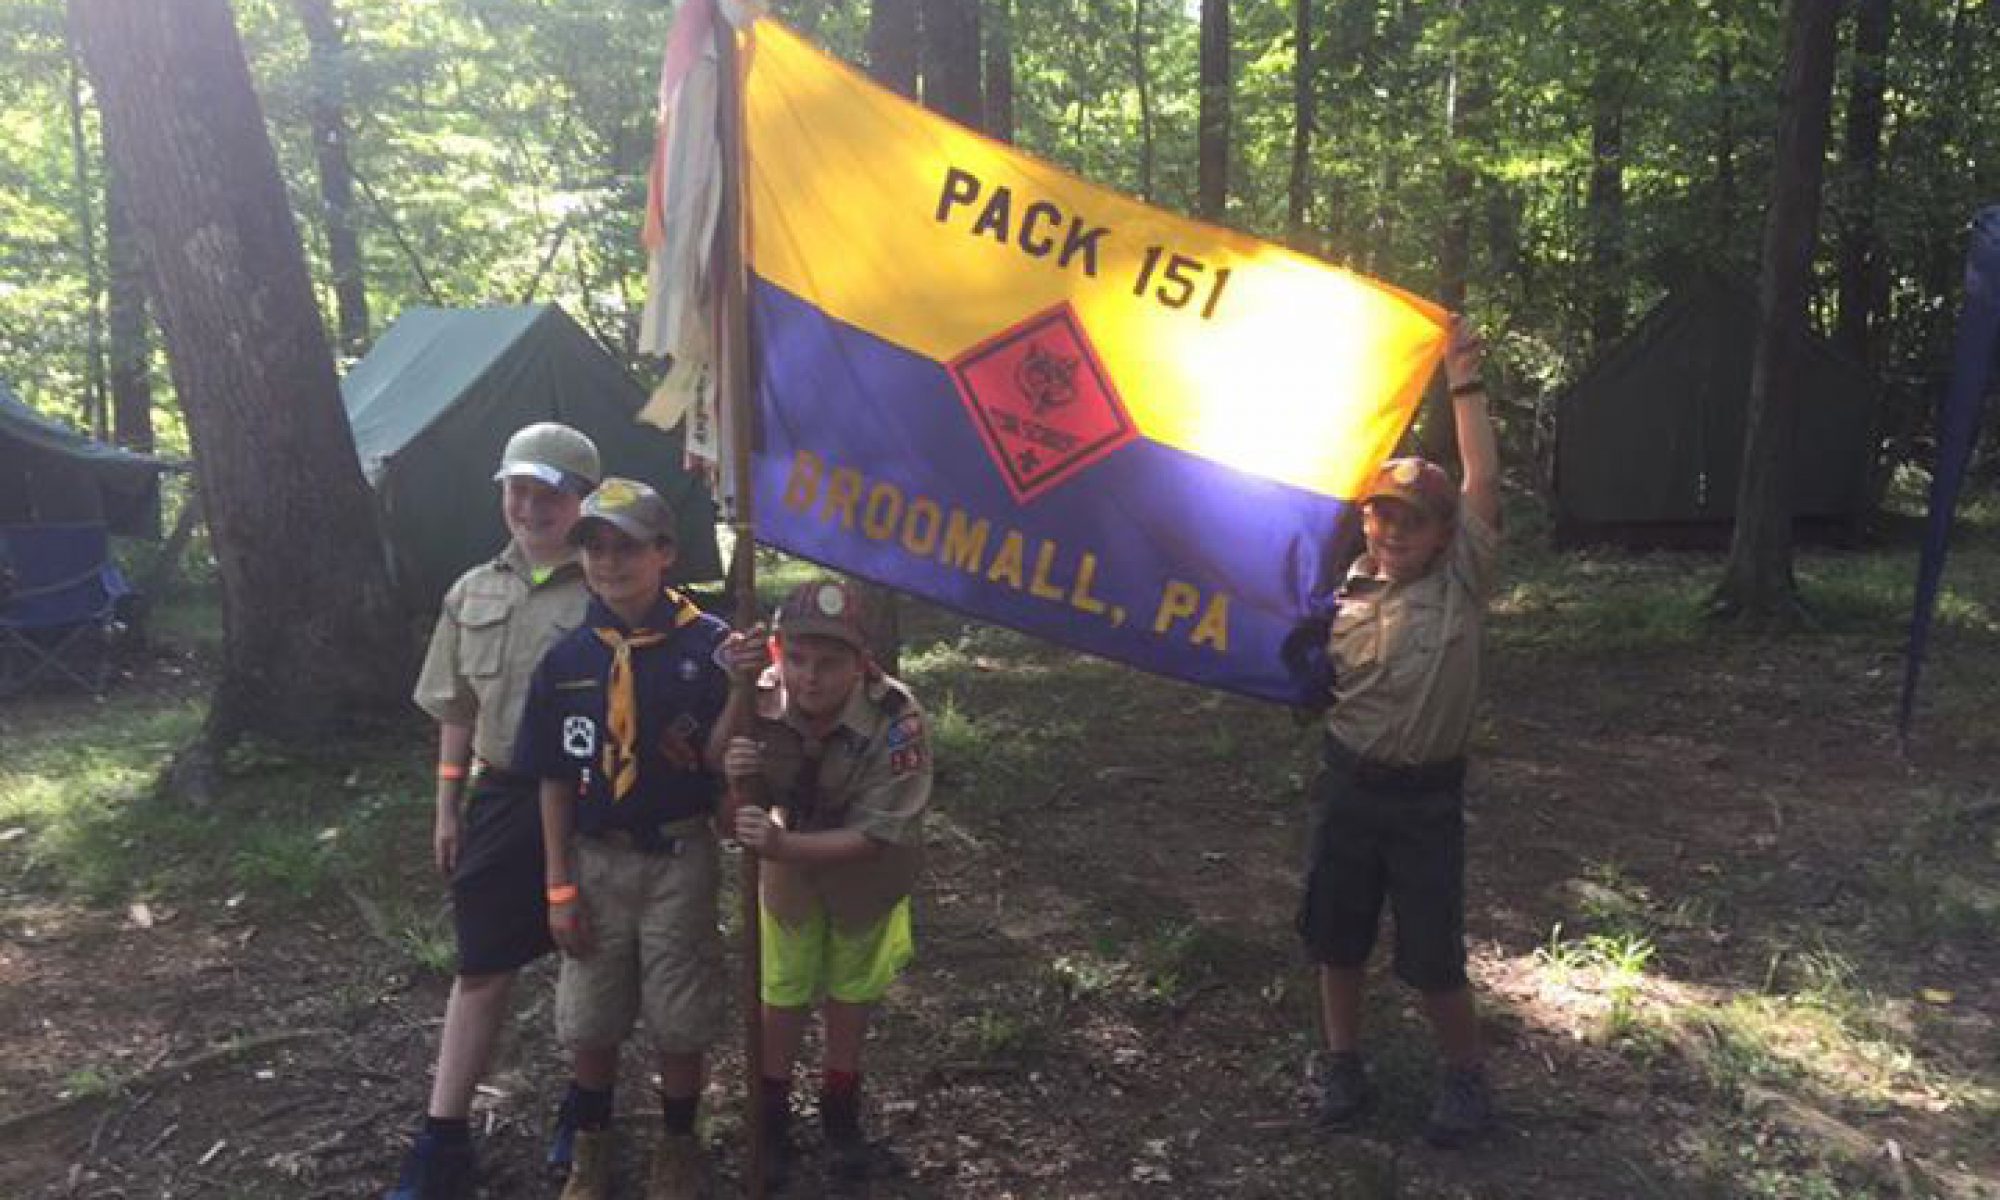 Cub Scout Pack 151